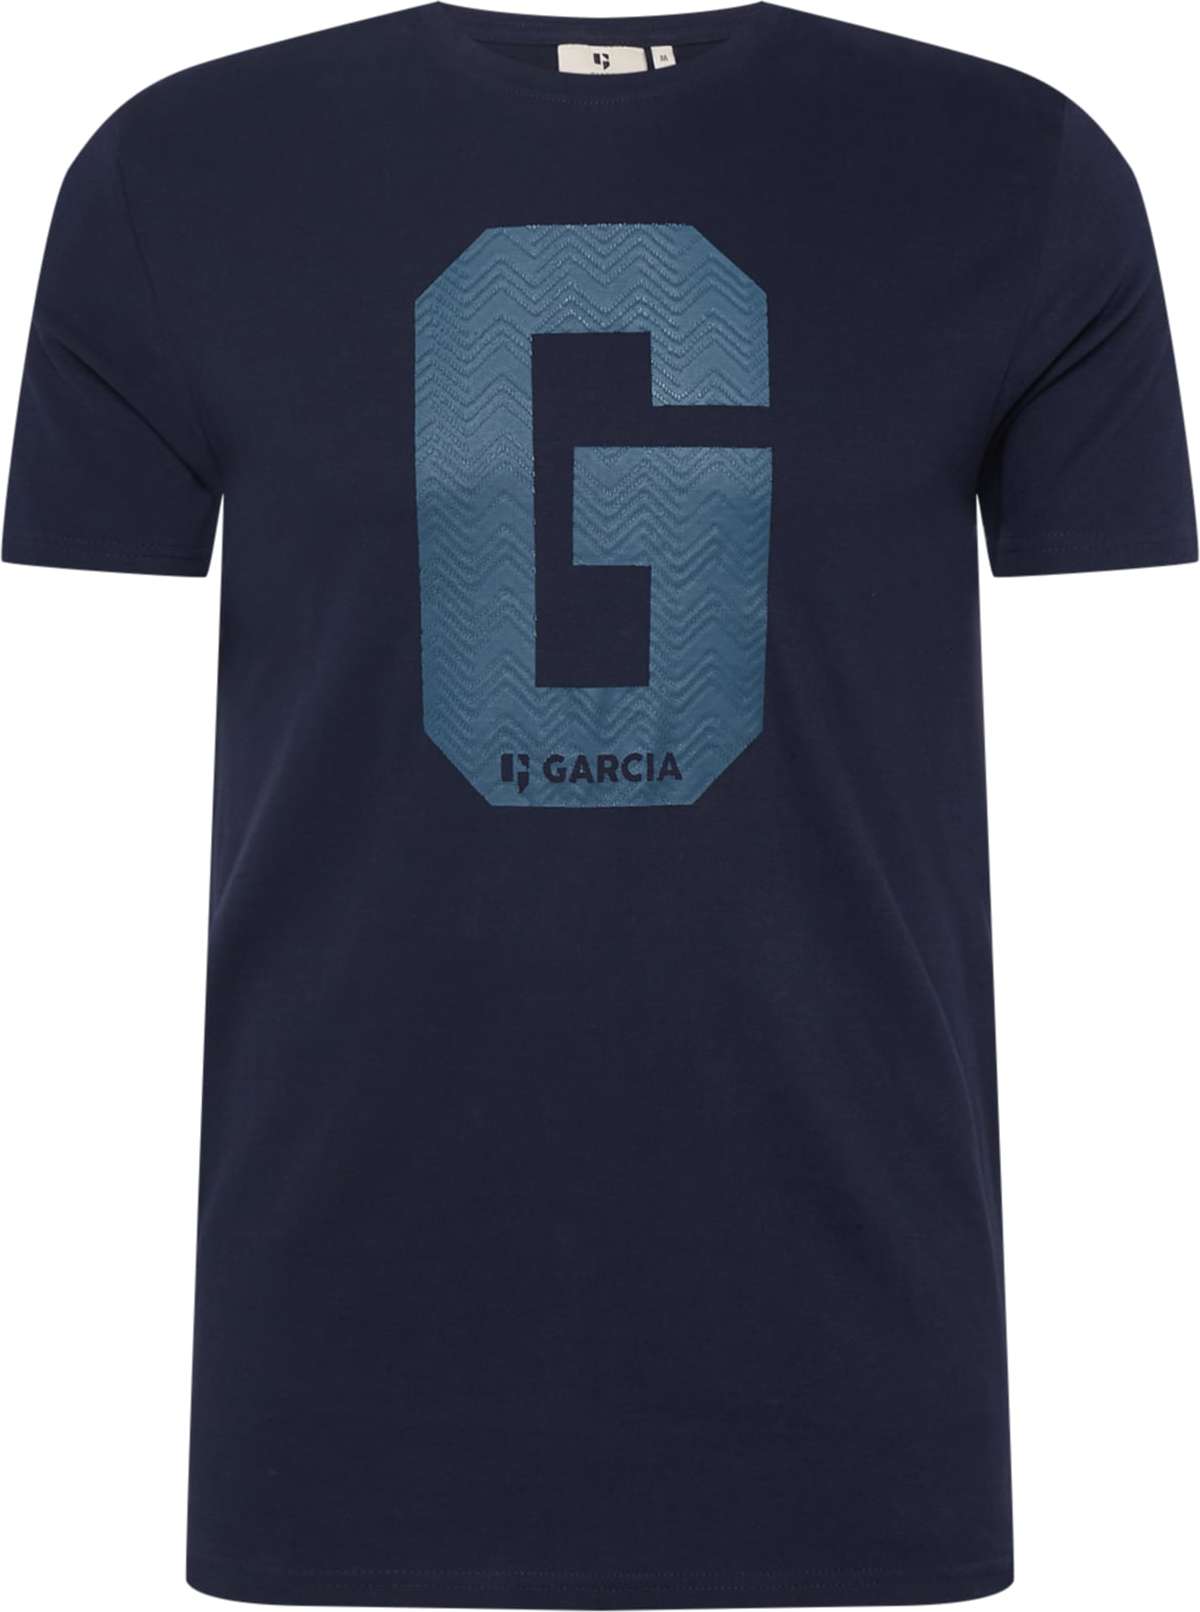 Tričko GARCIA marine modrá / námořnická modř